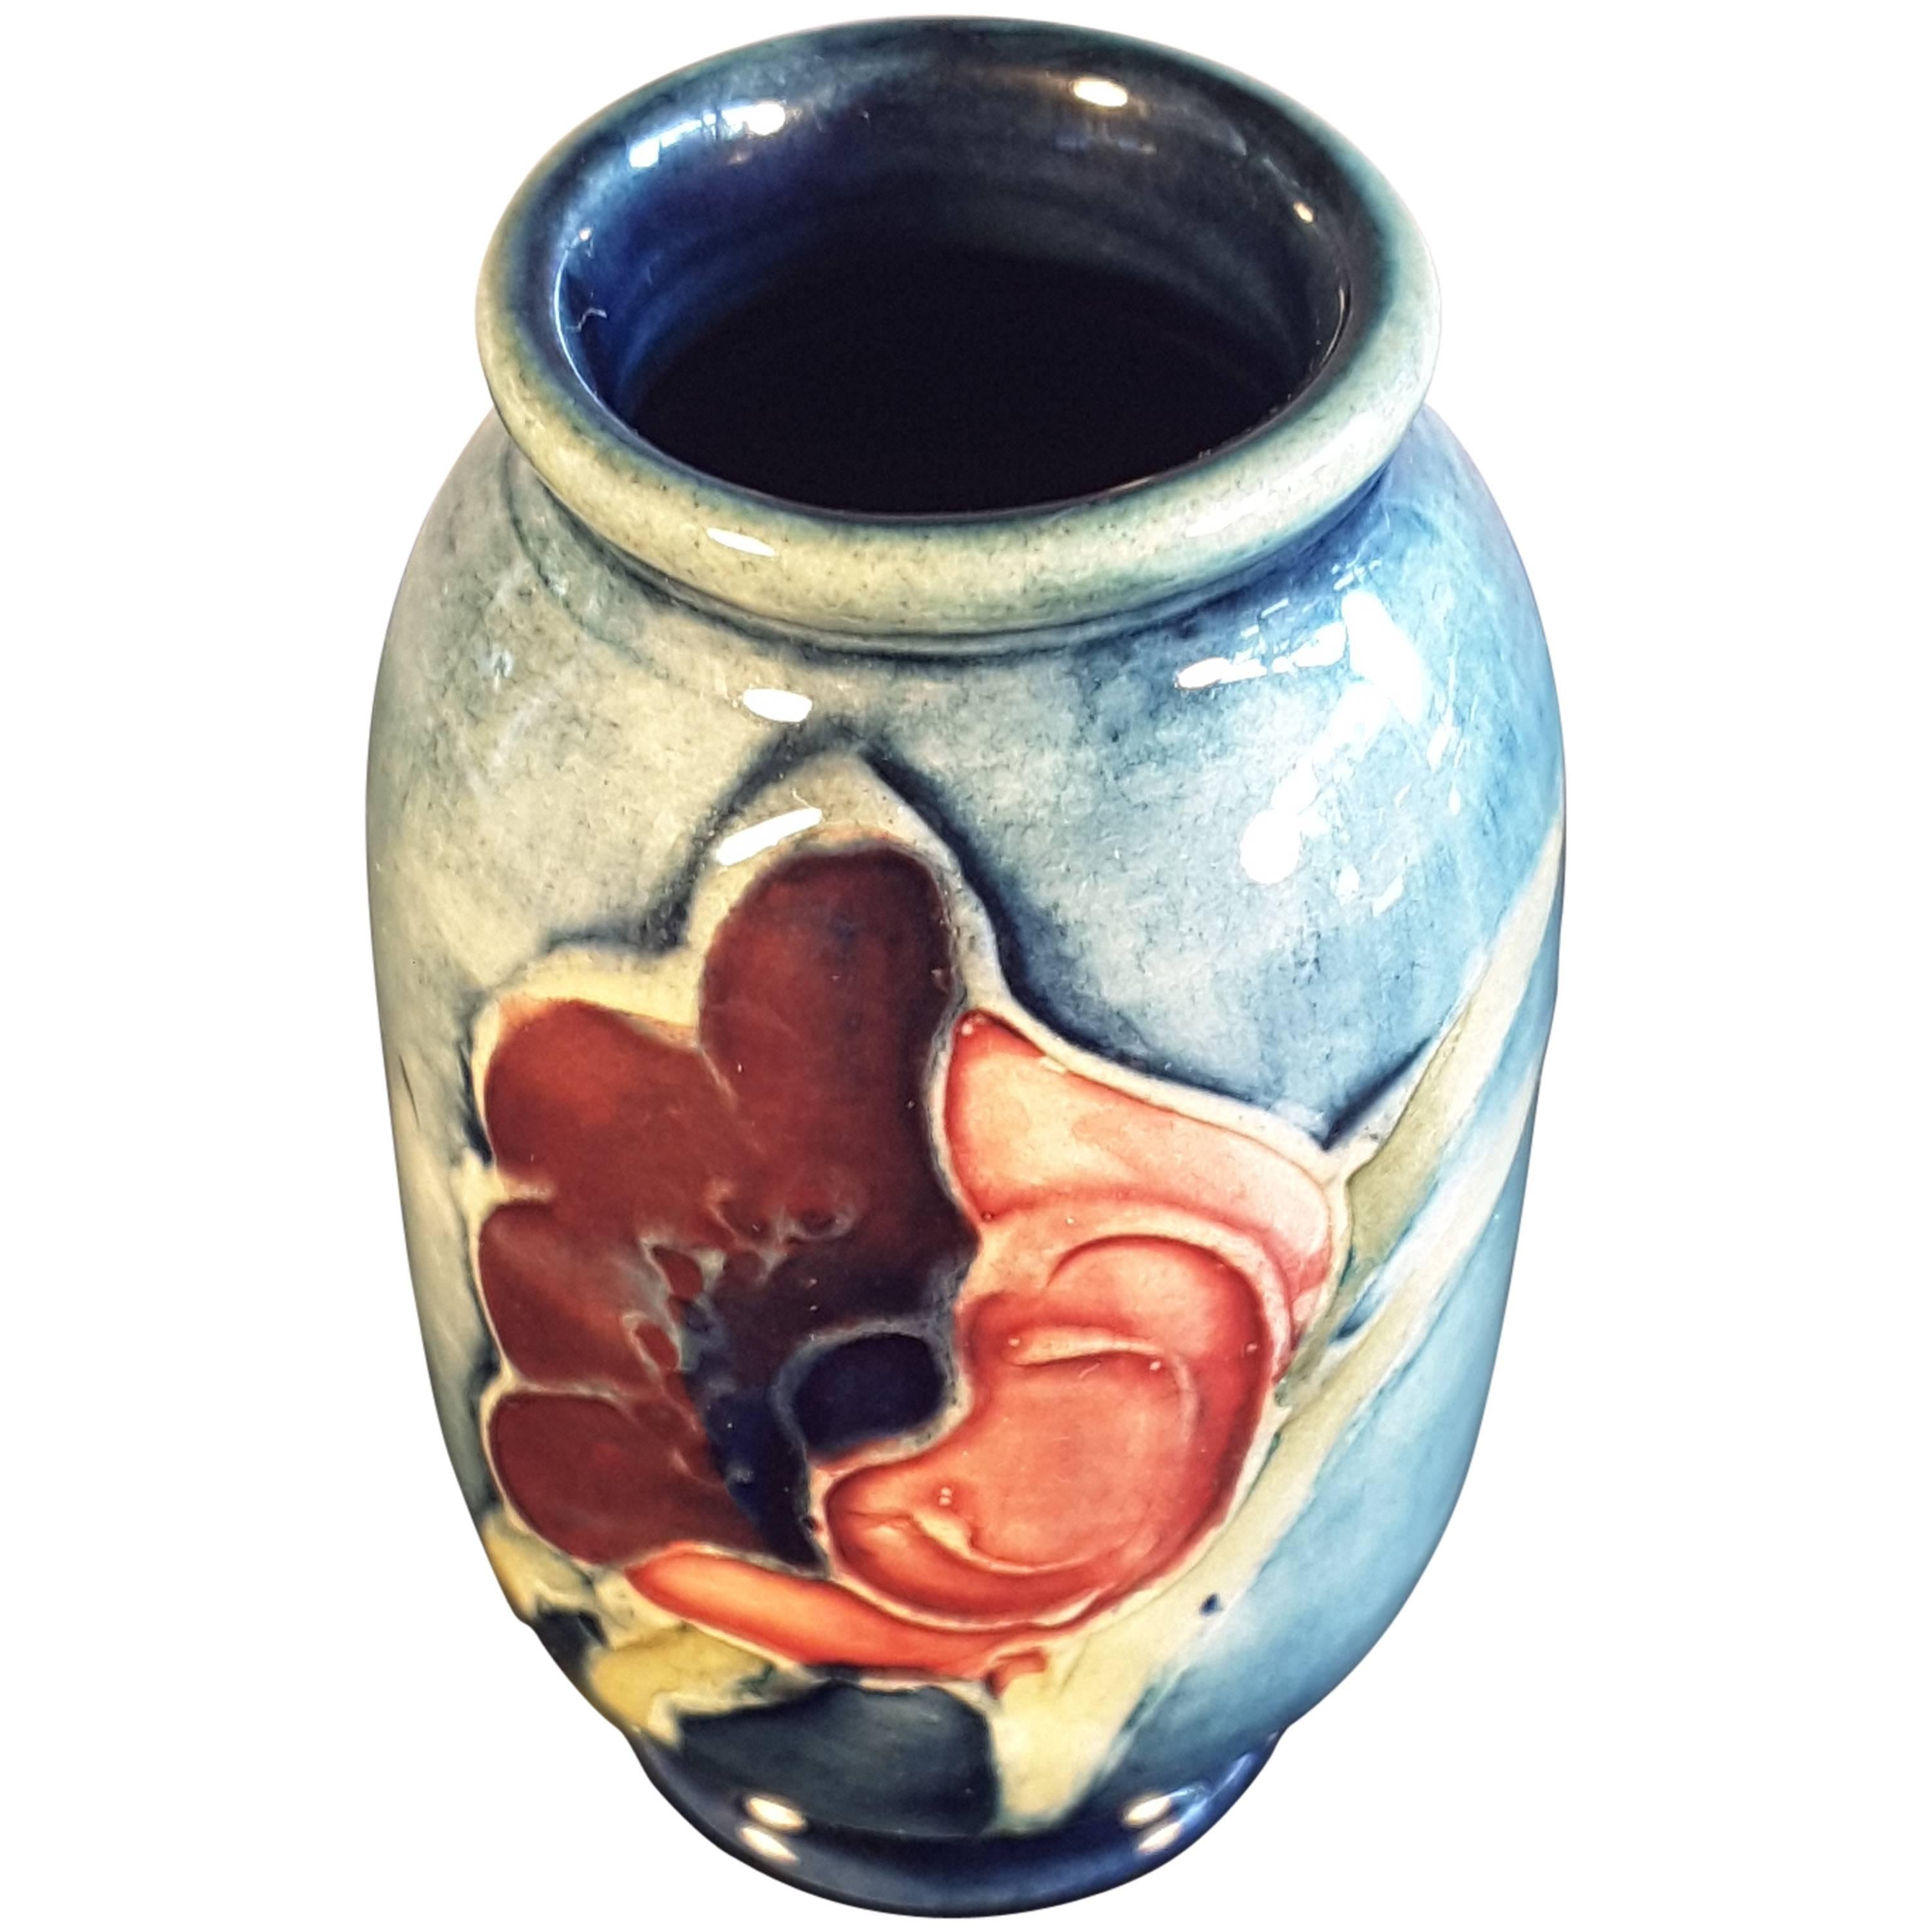 Miniatur-Moorcroft-Vase, 2 1/8" Zoll hoch,  Hergestellt in England, florales Design.